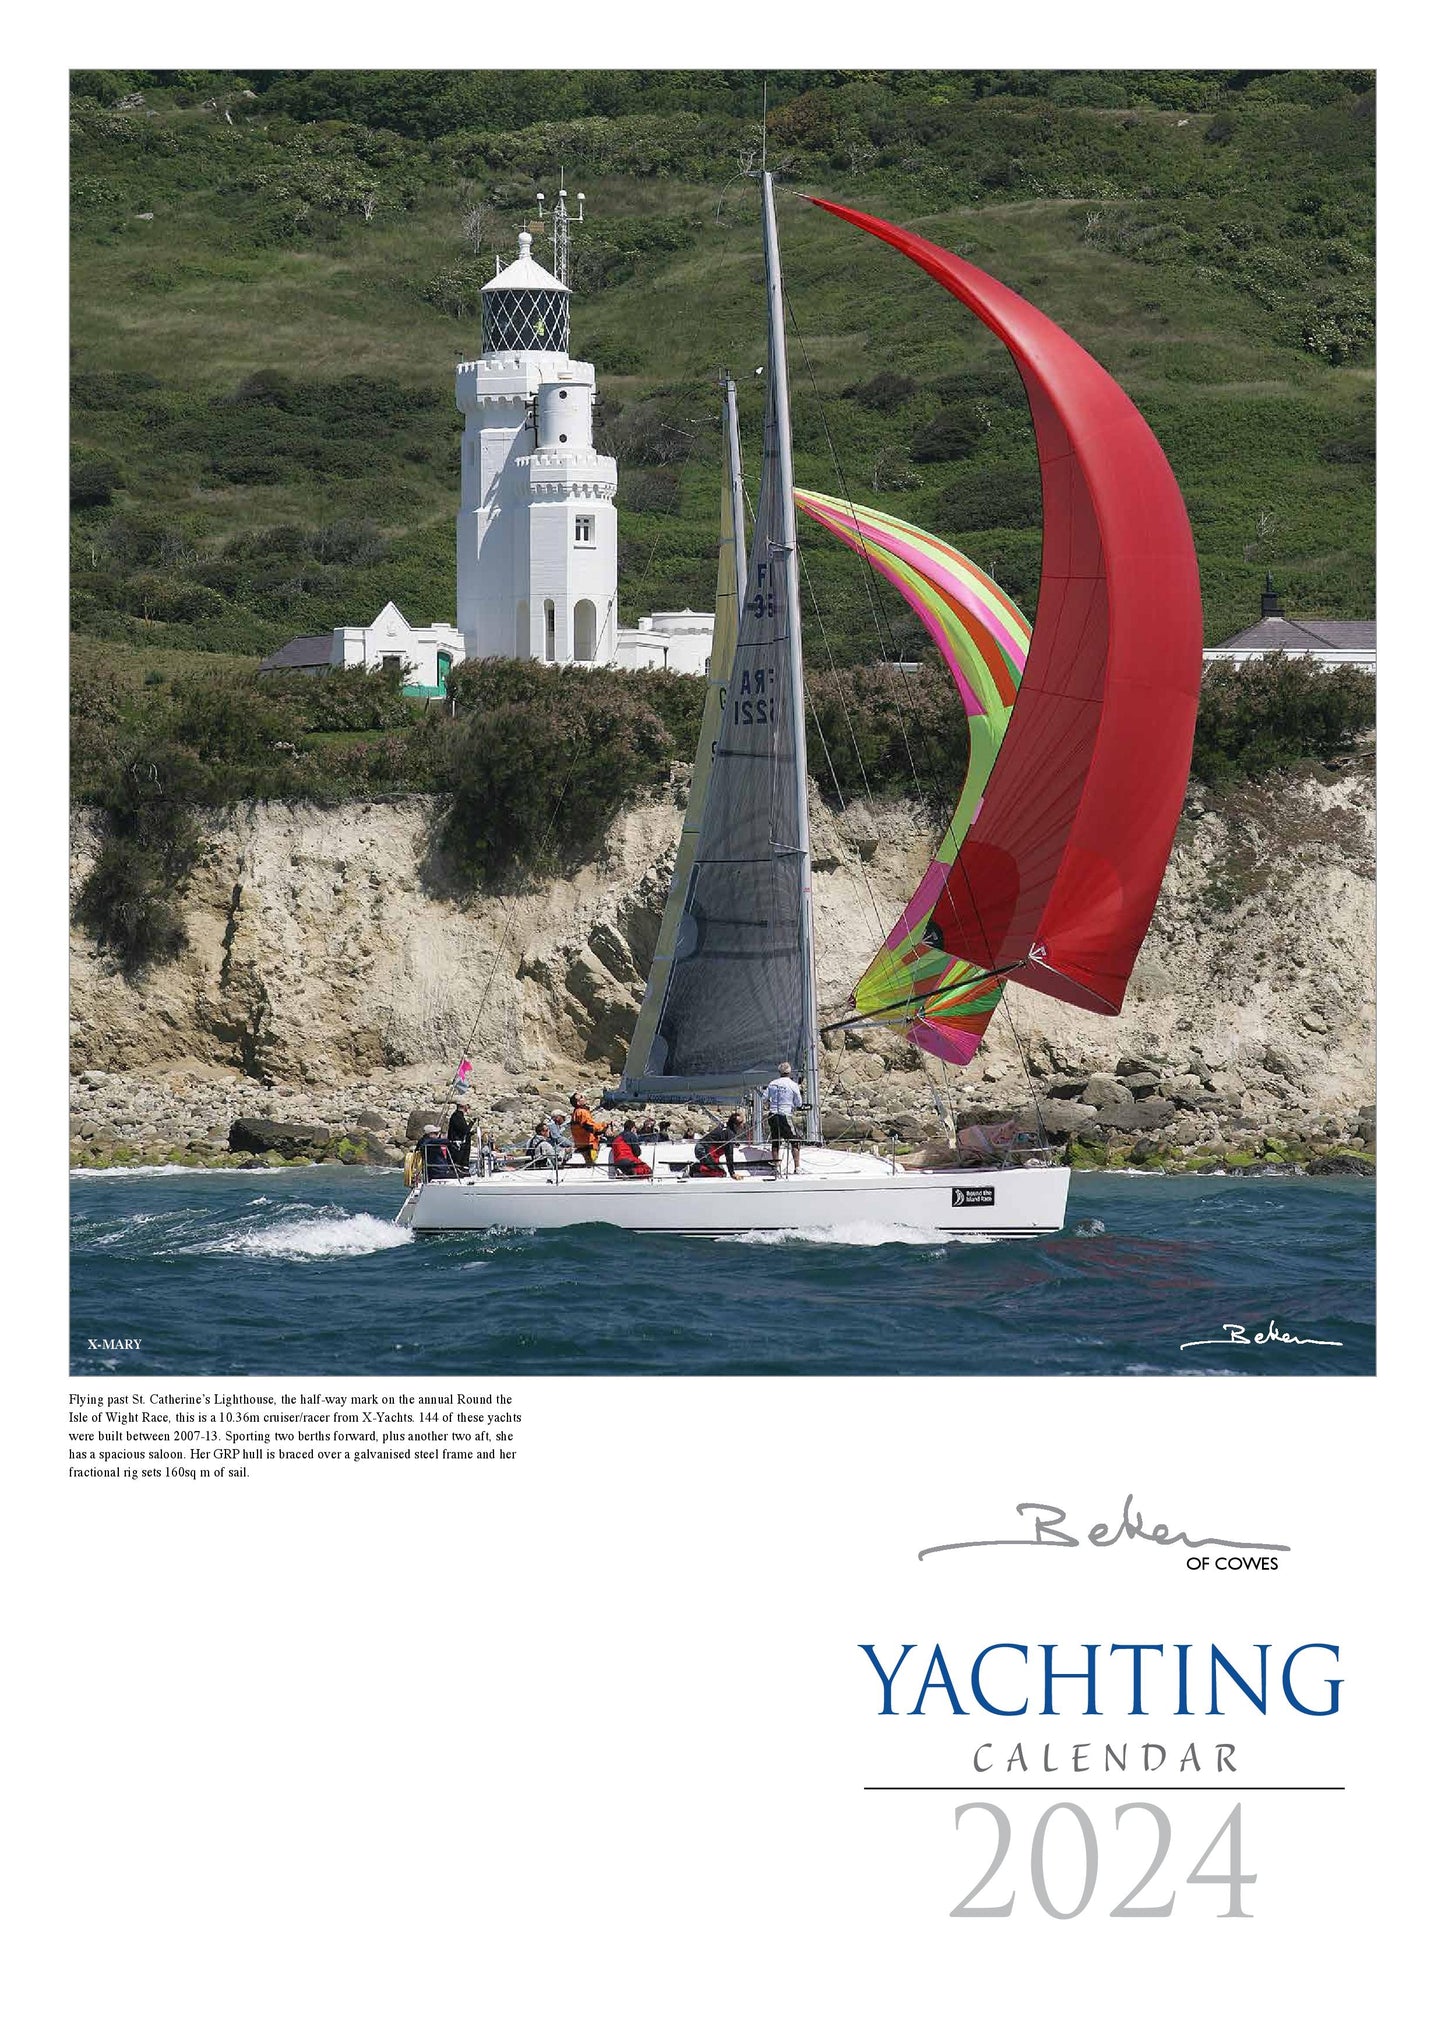 Beken of Cowes Yachting Calendar 2024